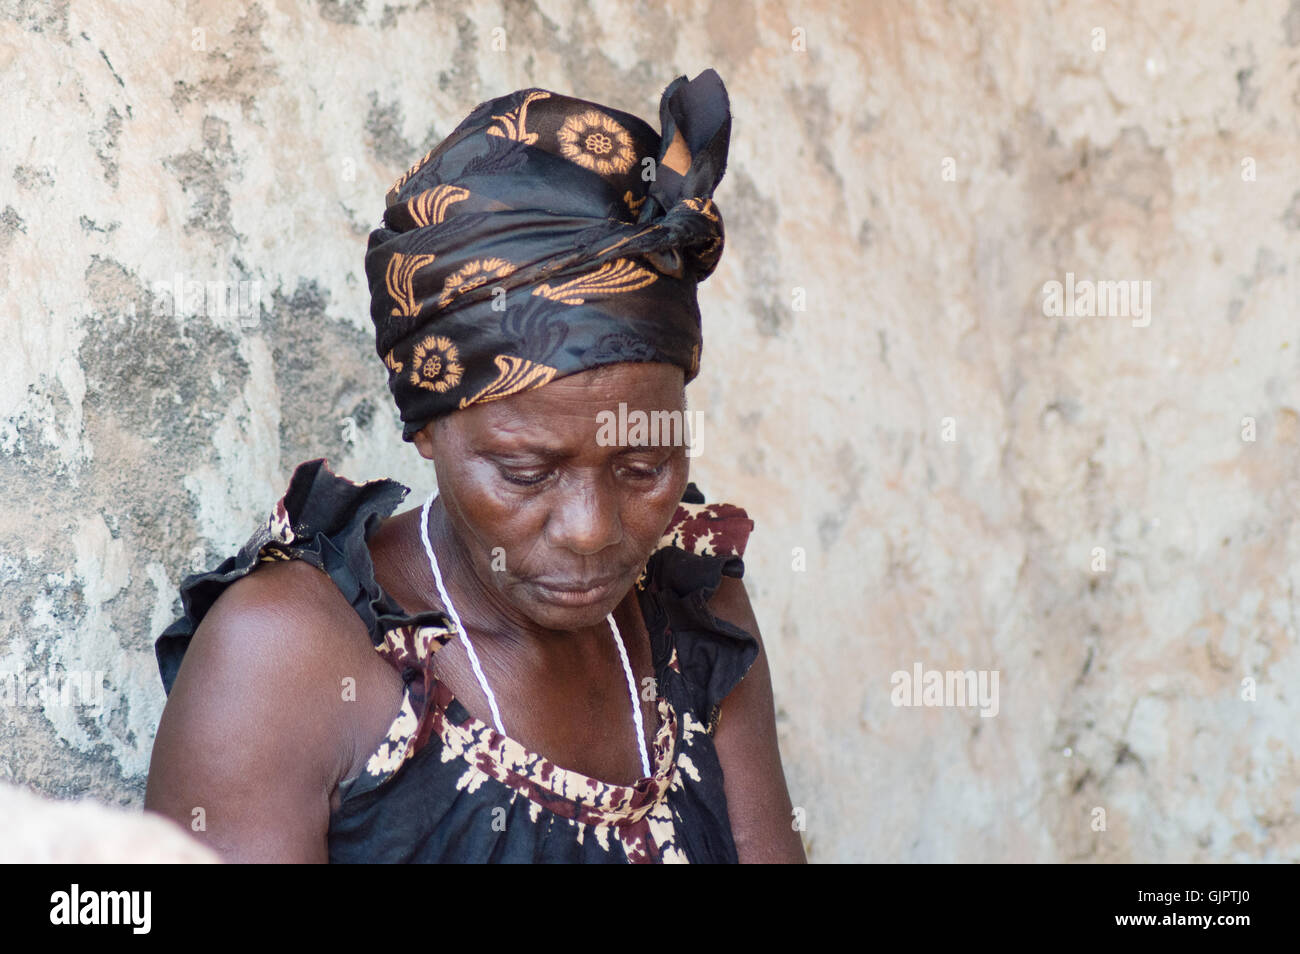 Cette femme est habillée comme la plupart des femmes africaines vivant dans le village. La tête à égalité avec un foulard et d'un pagne caraco Banque D'Images